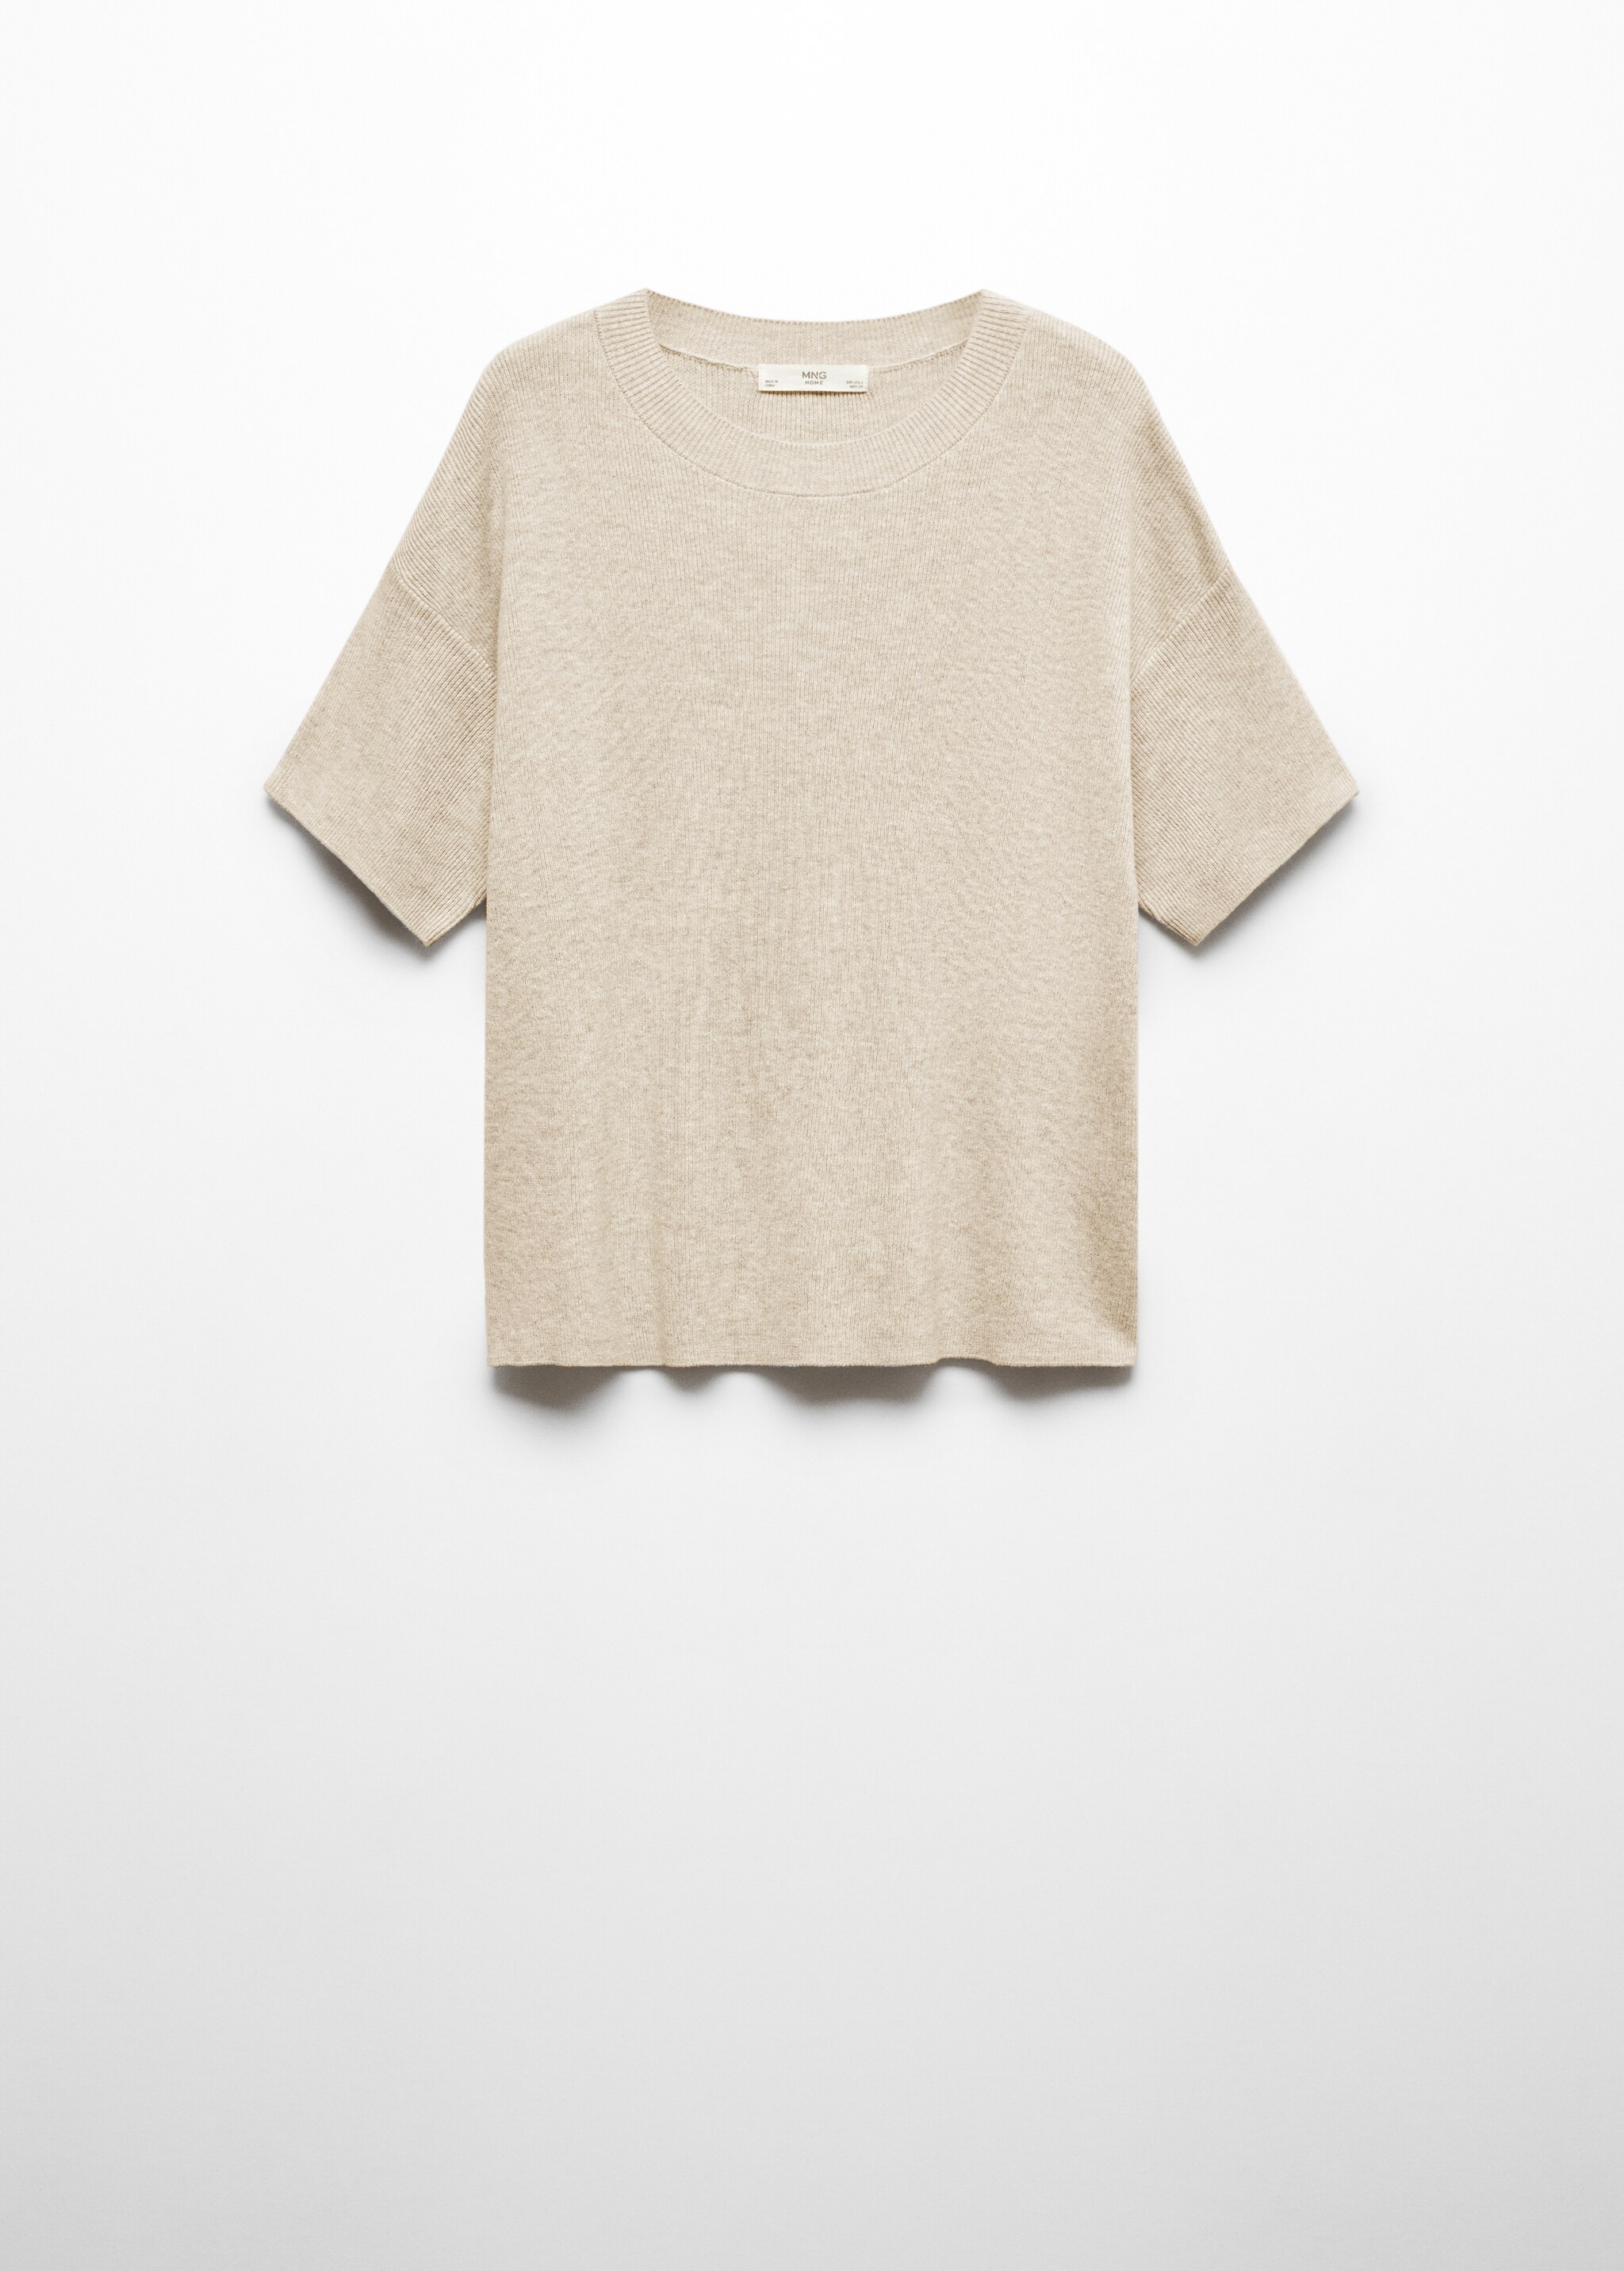 Cotton linen-blend knit t-shirt - Article without model